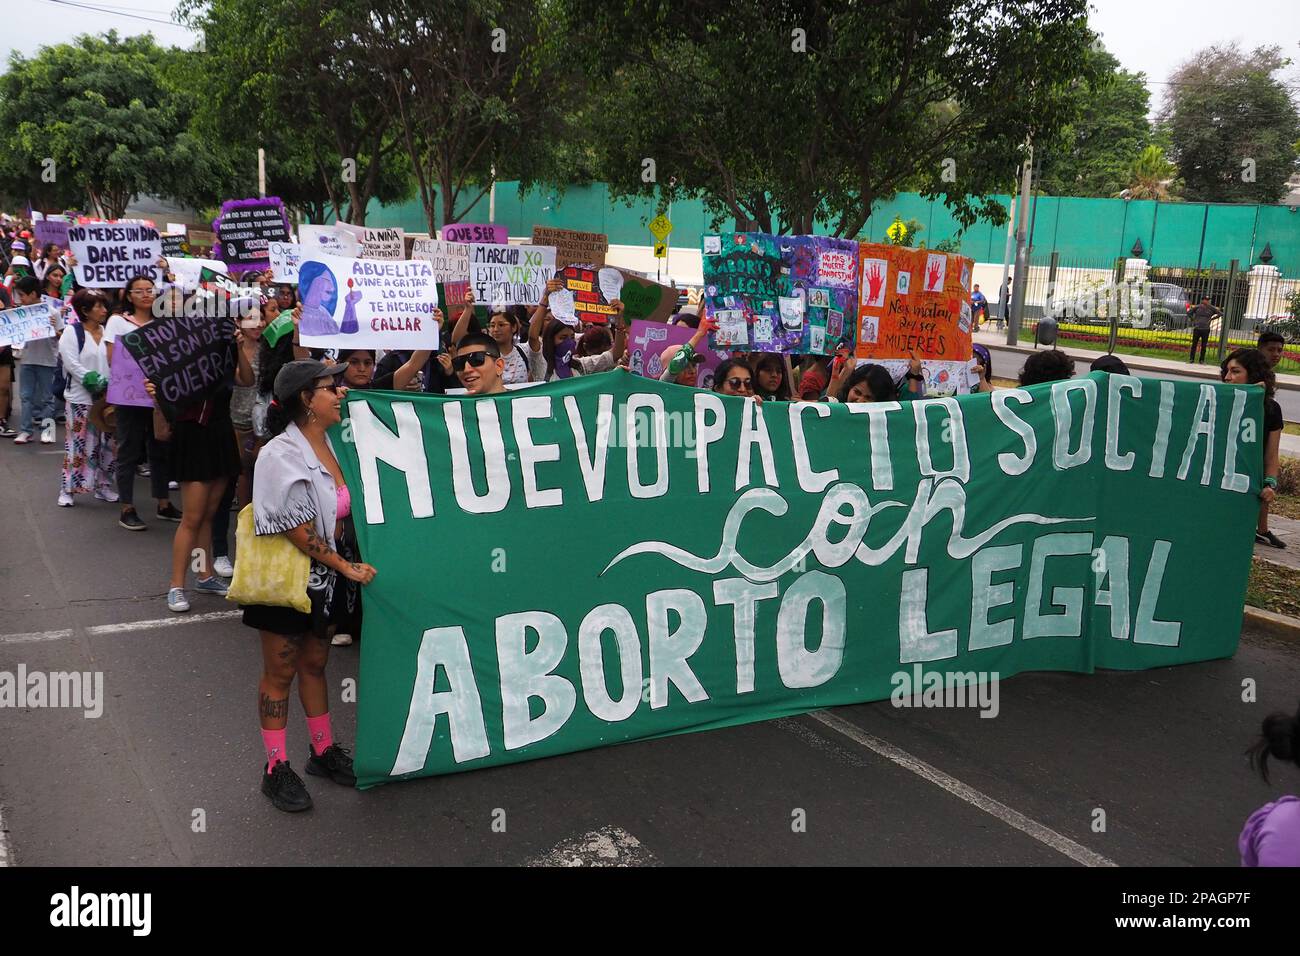 "Neuer Sozialpakt mit legaler Abtreibung" kann auf einem Banner gelesen werden, als Hunderte von Frauen im Rahmen der Aktivitäten zum Internationalen Frauentag auf die Straße gingen, um nach ihren Rechten zu marschieren. Derzeit werden in Lima alle Arten von Demonstrationen, einschließlich solcher, die Menschenrechte beanspruchen, stark unterdrückt. Kredit: Fotoholica Press Agency/Alamy Live News Stockfoto